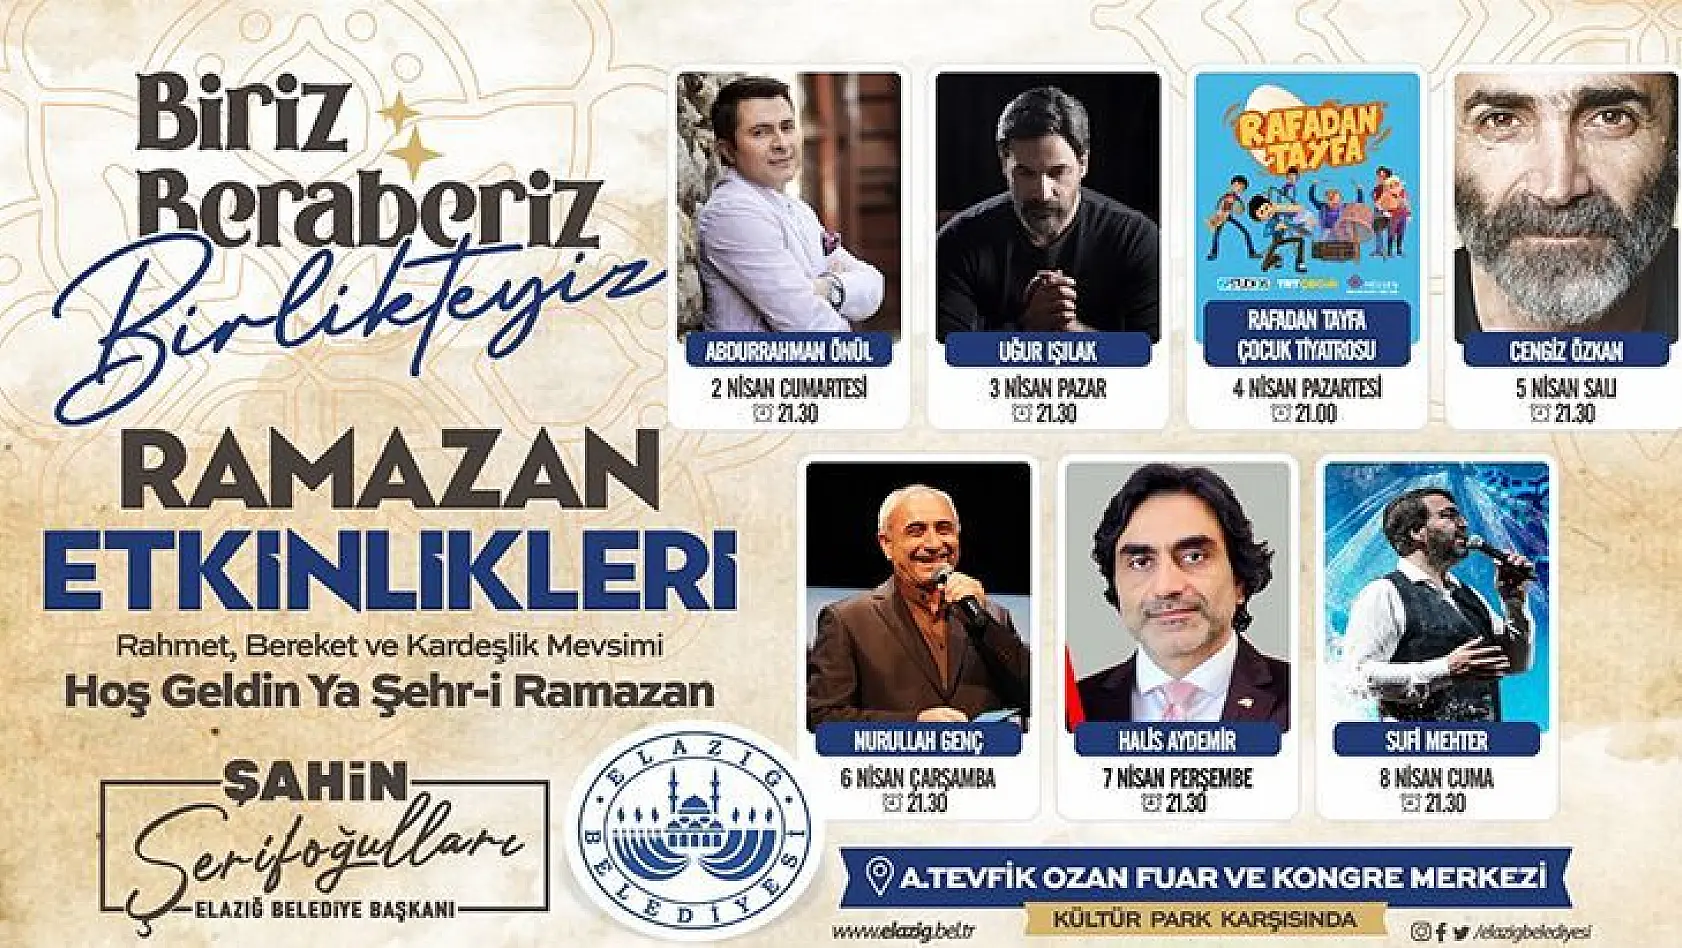 Elazığ Belediyesi'nden Muhteşem Ramazan Programı